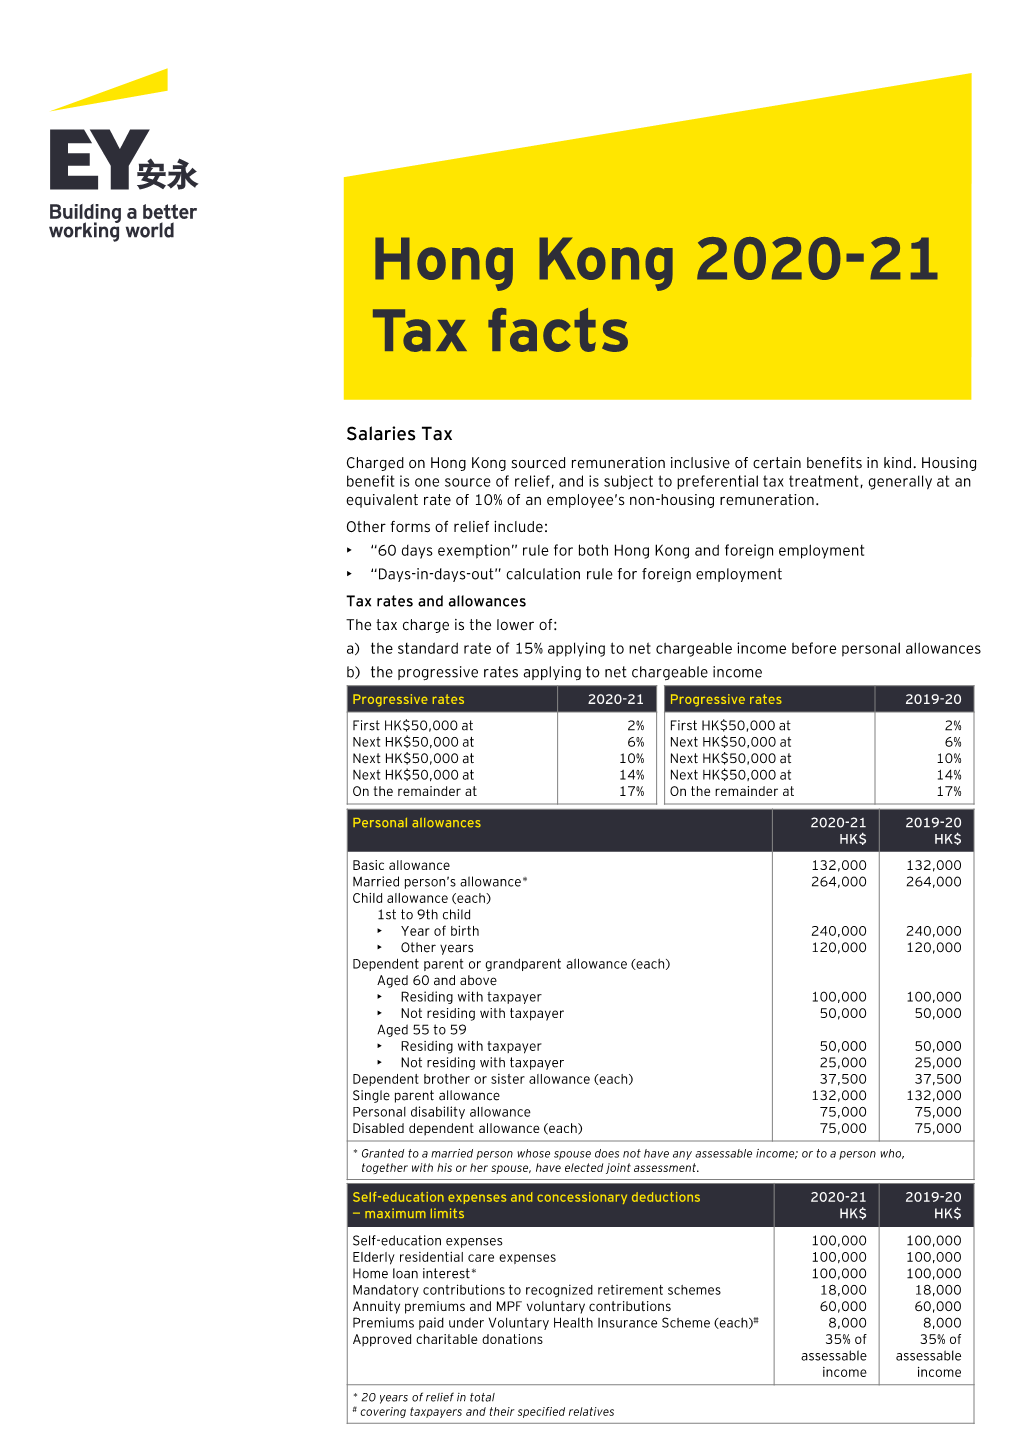 Hong Kong 2020-21 Tax Facts